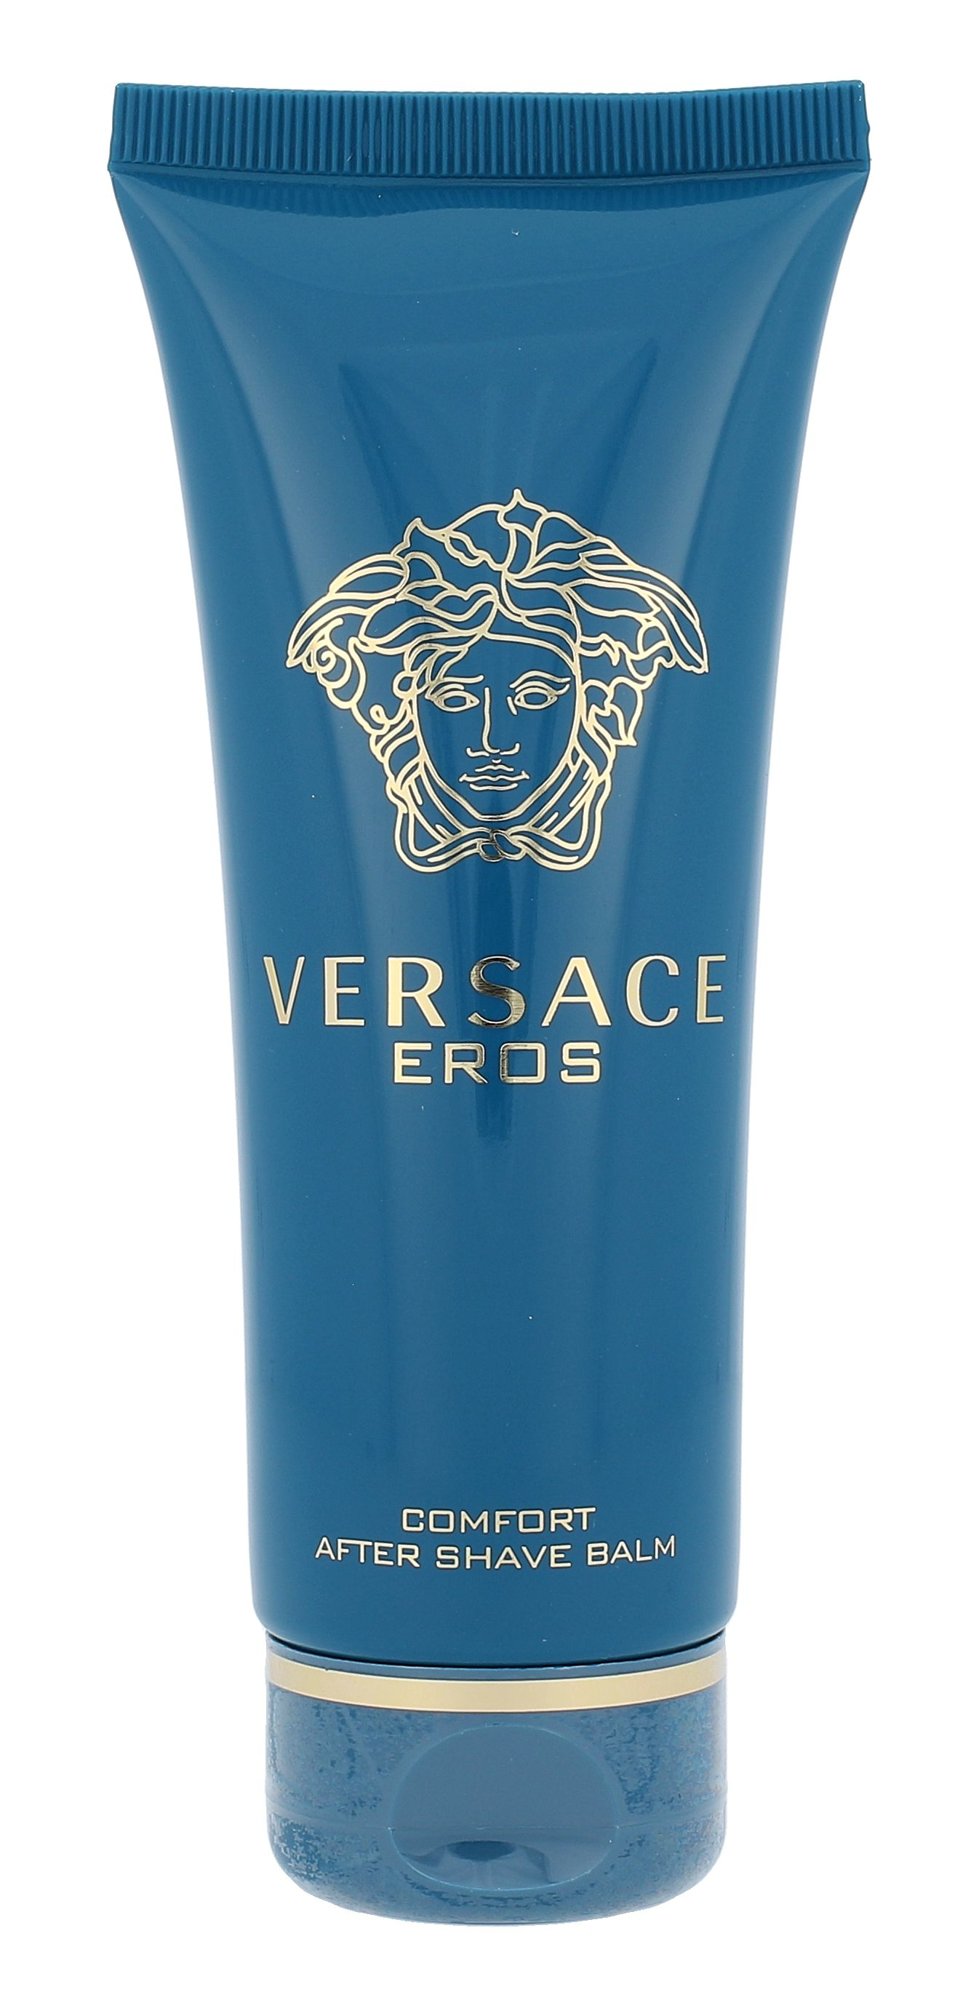 Versace Eros 100ml balzamas po skutimosi